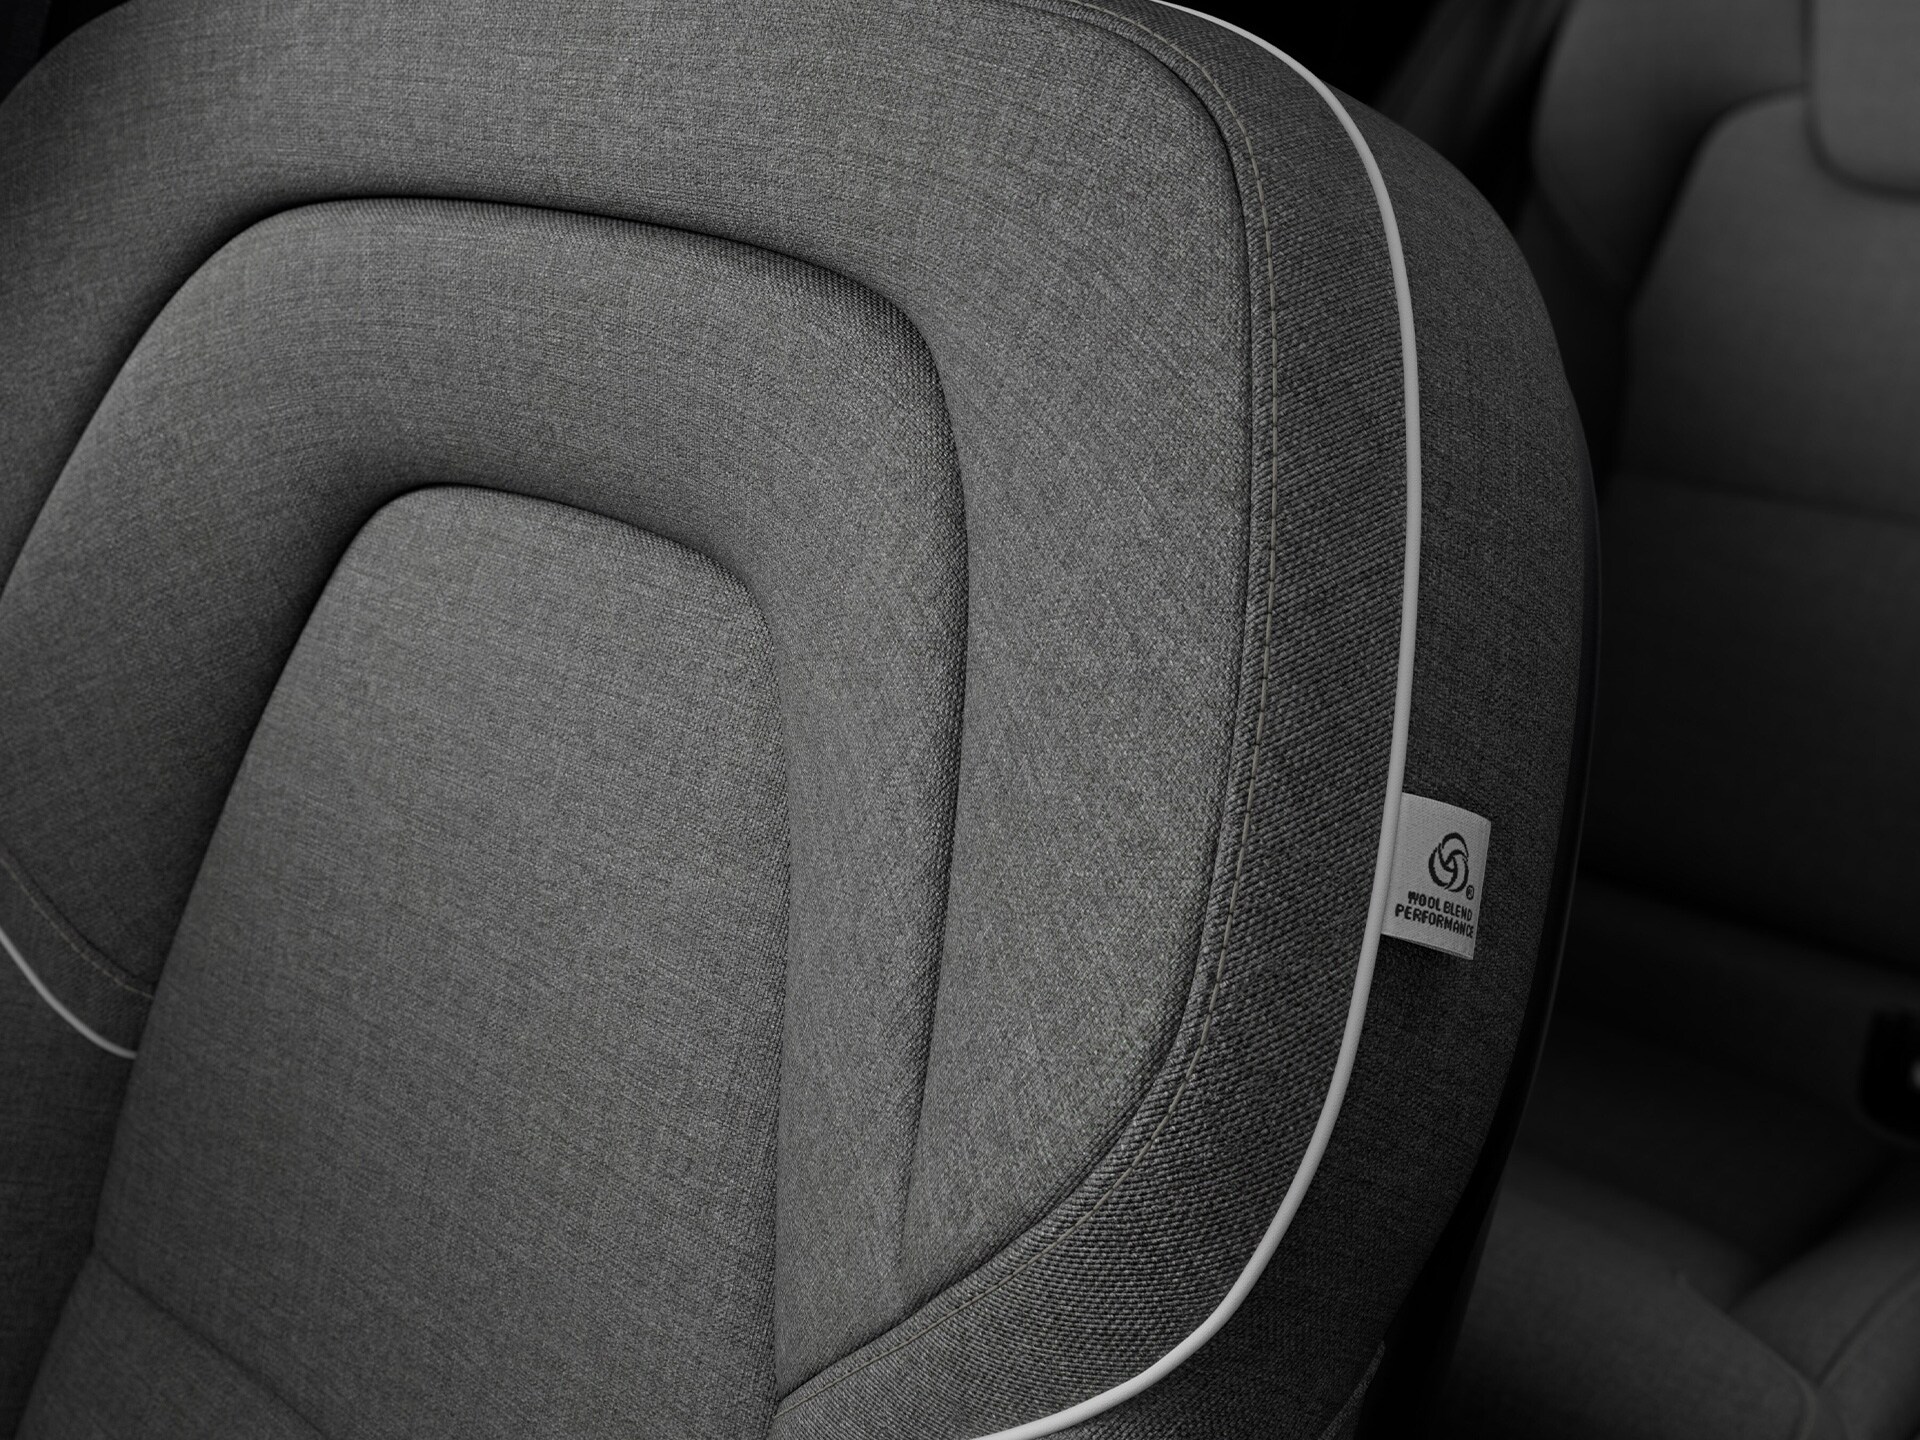 Kunszt wykonania i naturalne materiały definiują wnętrze Volvo V90 Recharge.